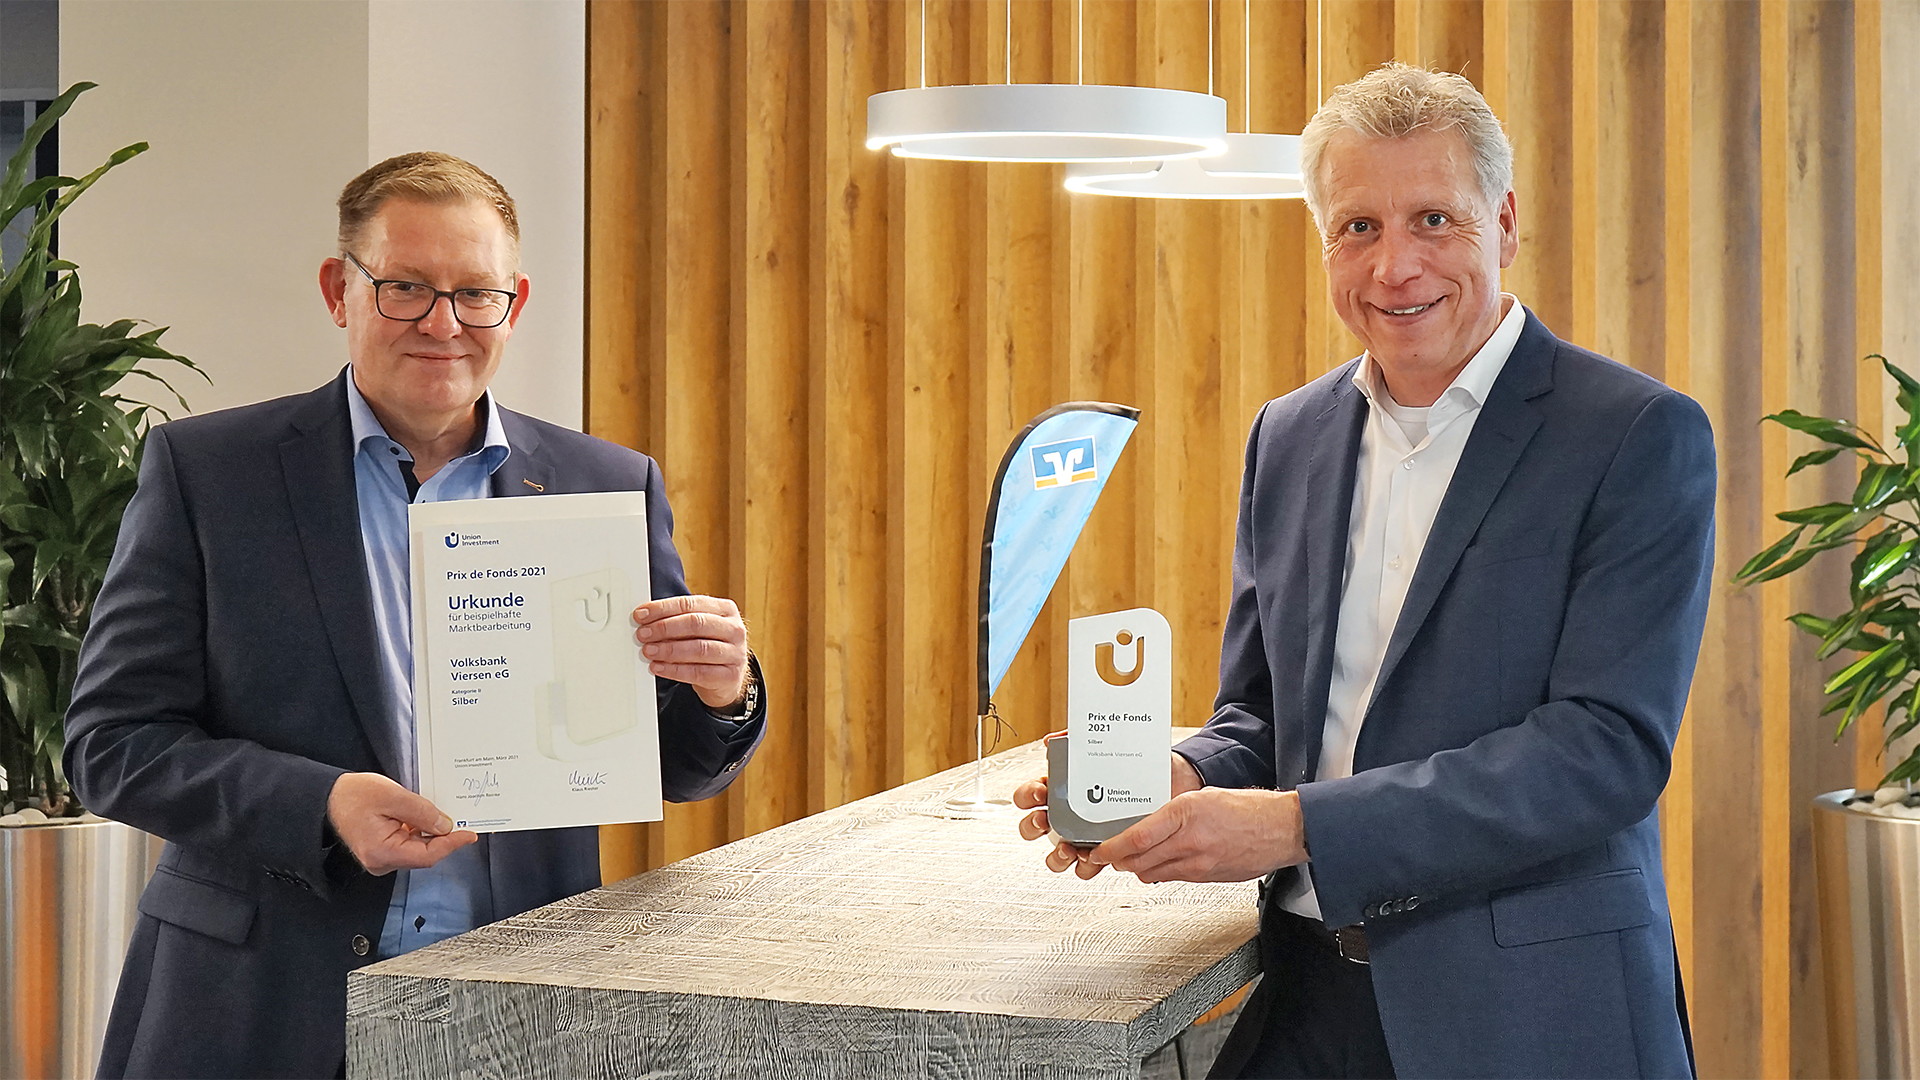 Mathias Deimann, Vertriebsdirektor der UNION INVESTMENT, übergab den Prix de Fonds an Jürgen Cleven, Vorstandsvorsitzender der Volksbank Viersen.